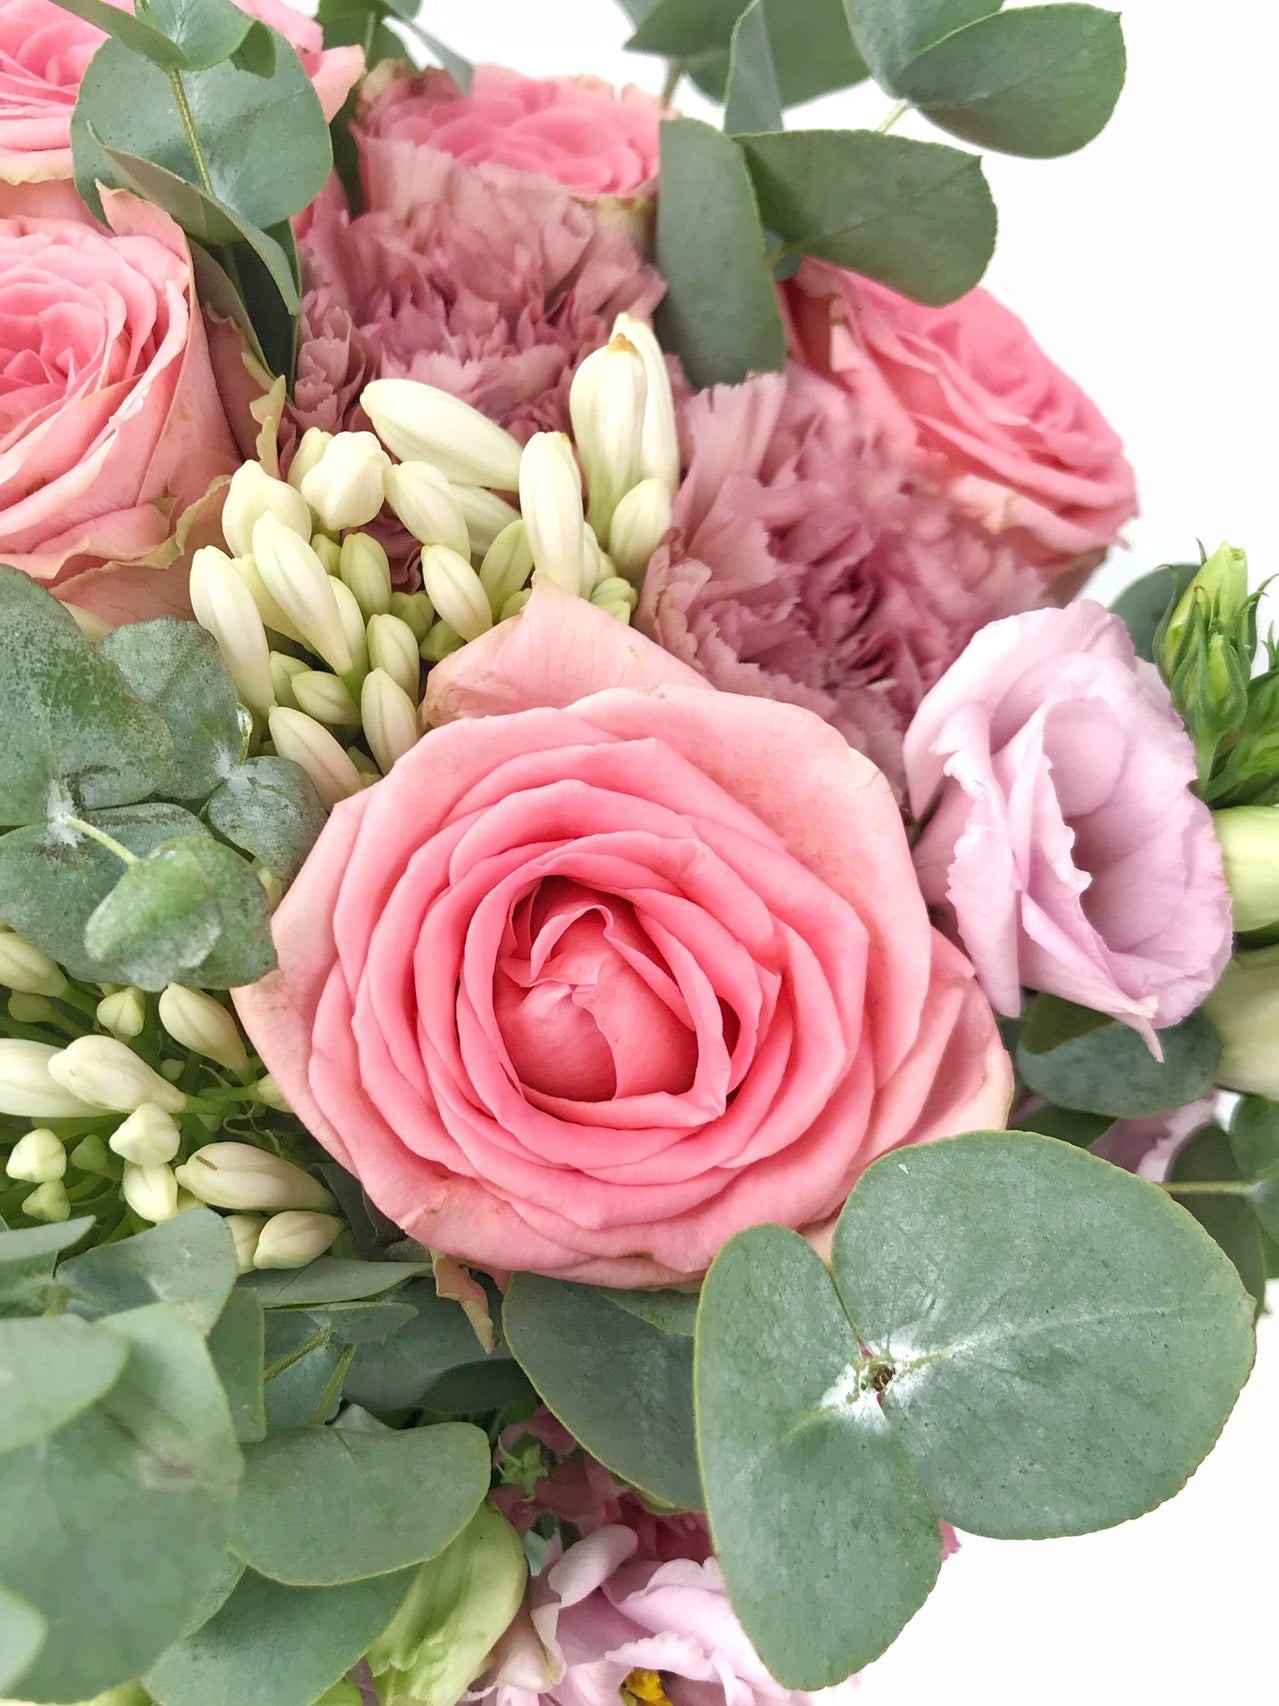 Envoi de fleurs pour anniversaire - Grand bouquet 